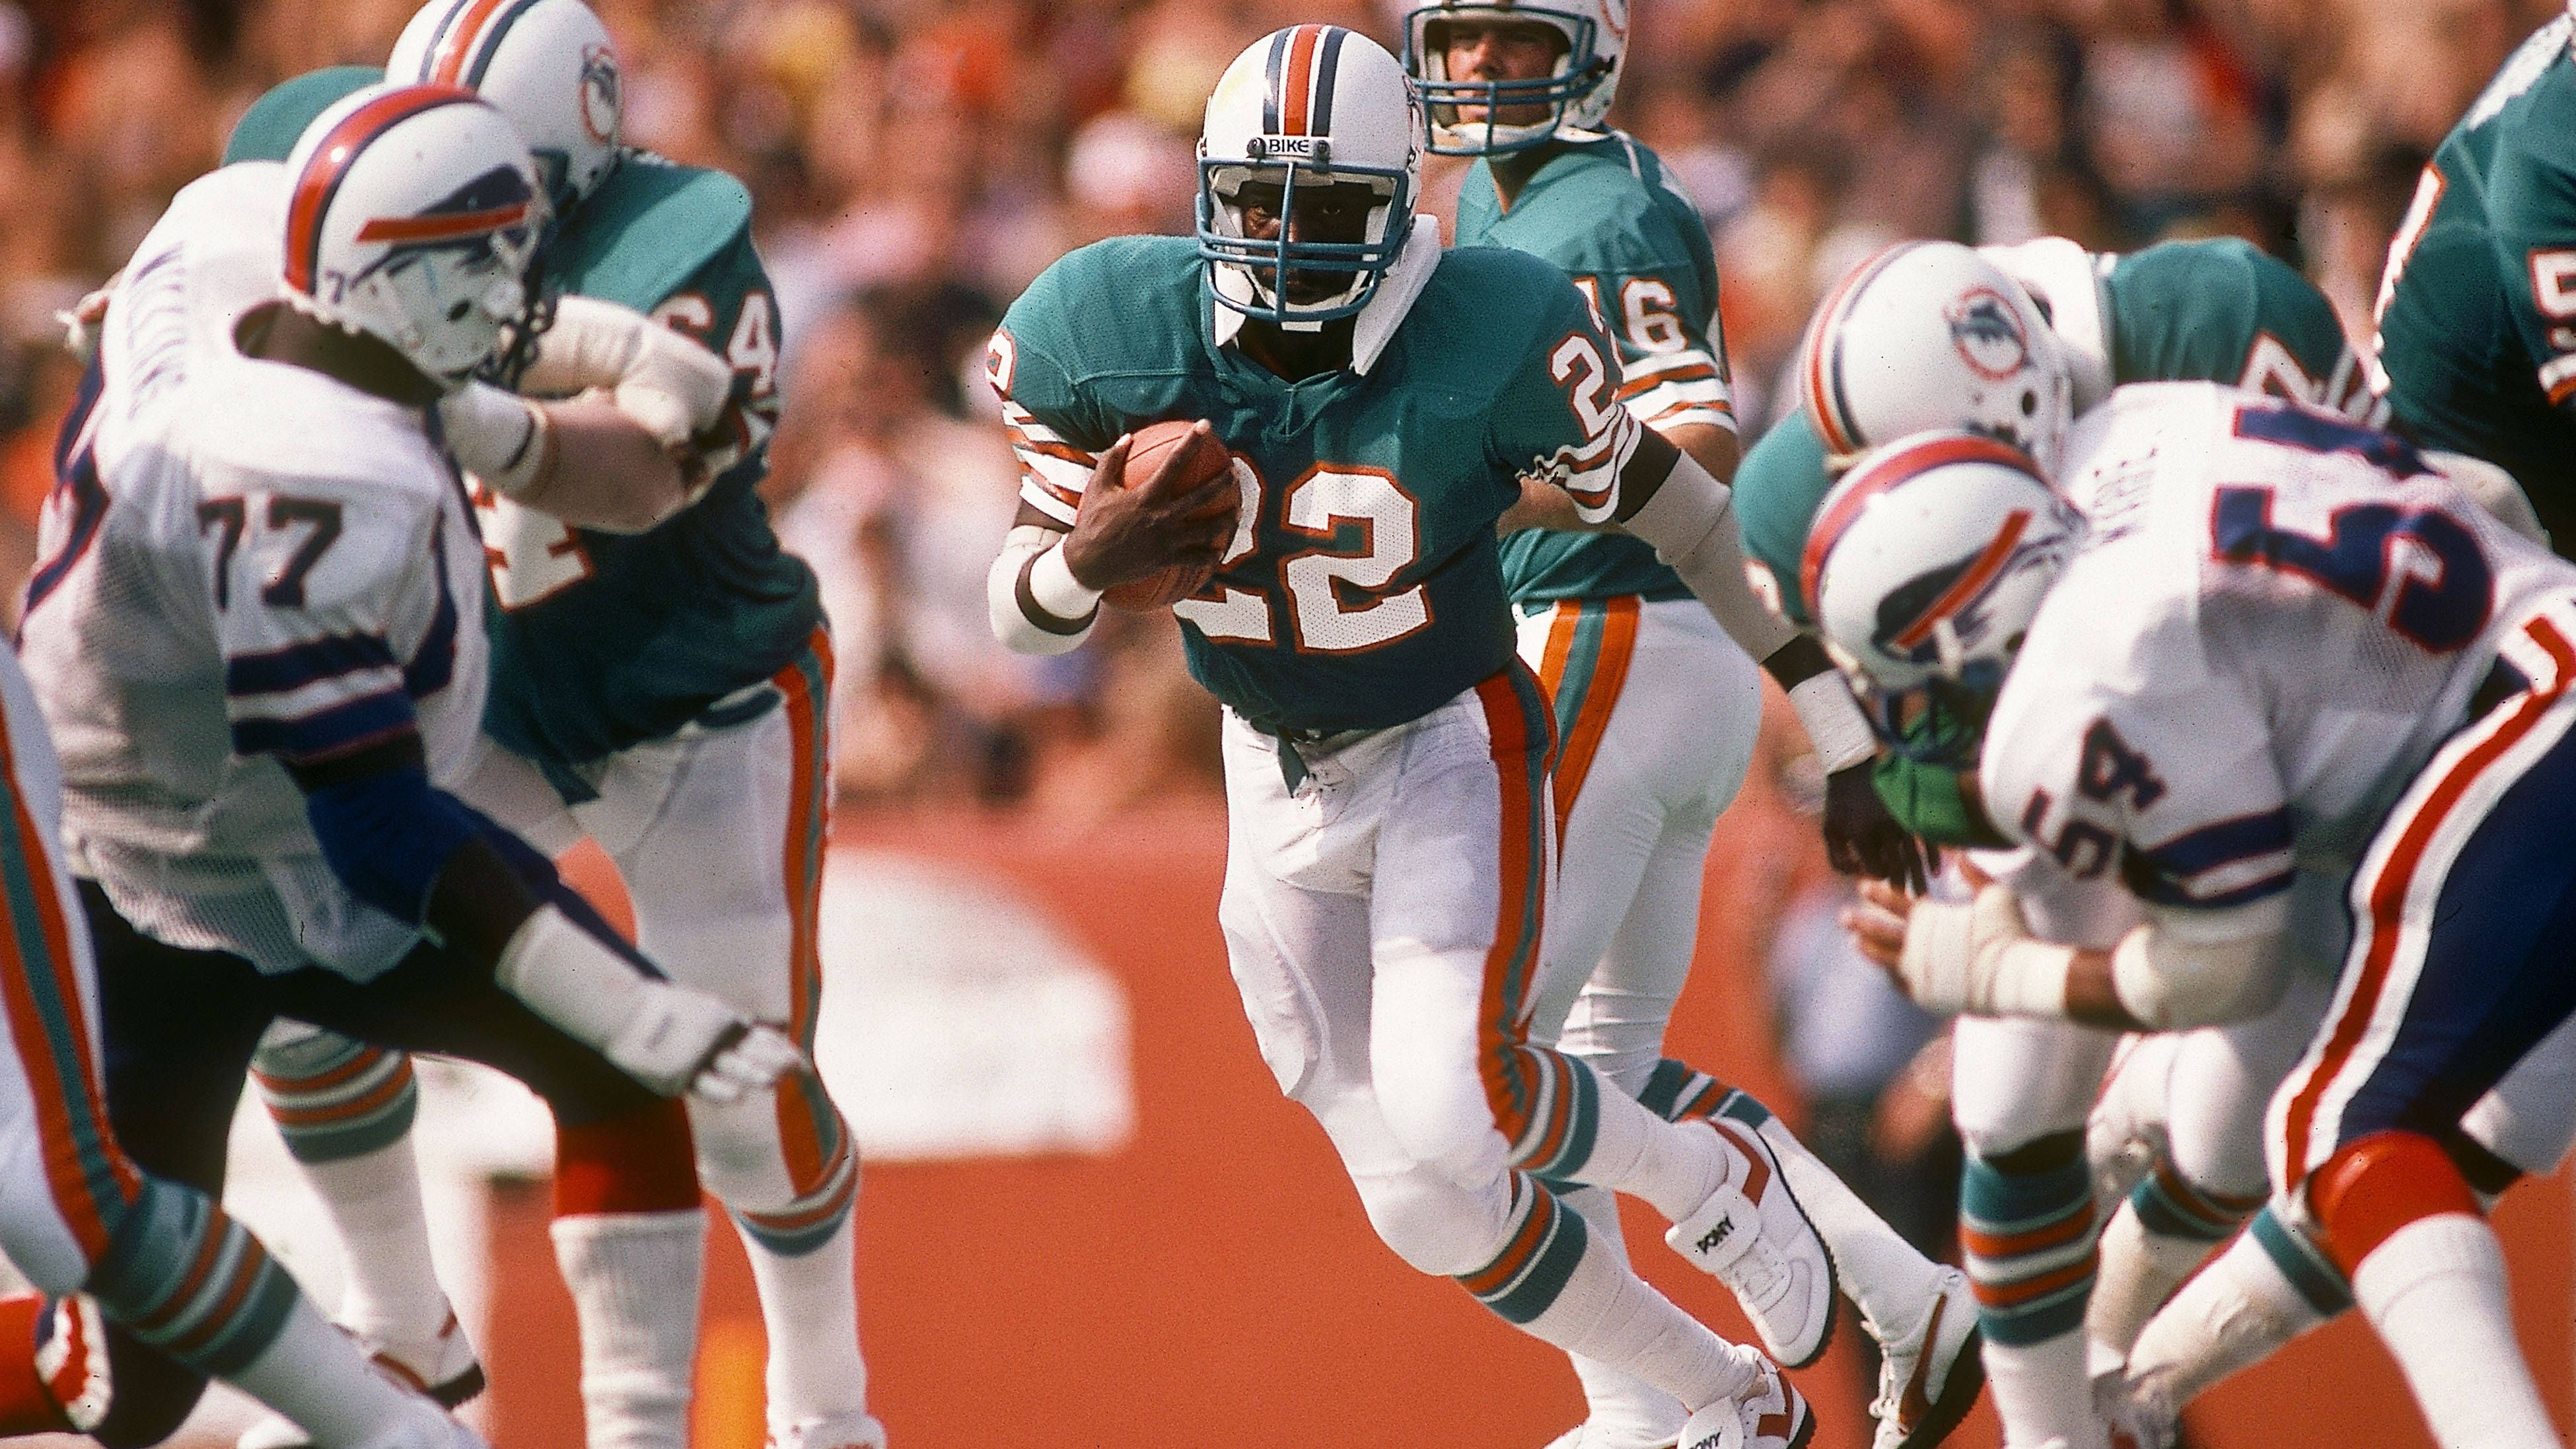 <strong>Woodlawn - the true story - Liebet eure Feinde (2015)</strong><br>Dort sieht sich Nathan jedoch weiter rassistischen Anfeindungen ausgesetzt - bis Schul-Kaplan Hank die verfeindeten Lager durch Nächstenliebe vereinen kann. Später schafft es Nathan in die NFL, spielte von 1979 bis 1987 als Running Back bei den Miami Dolphins.